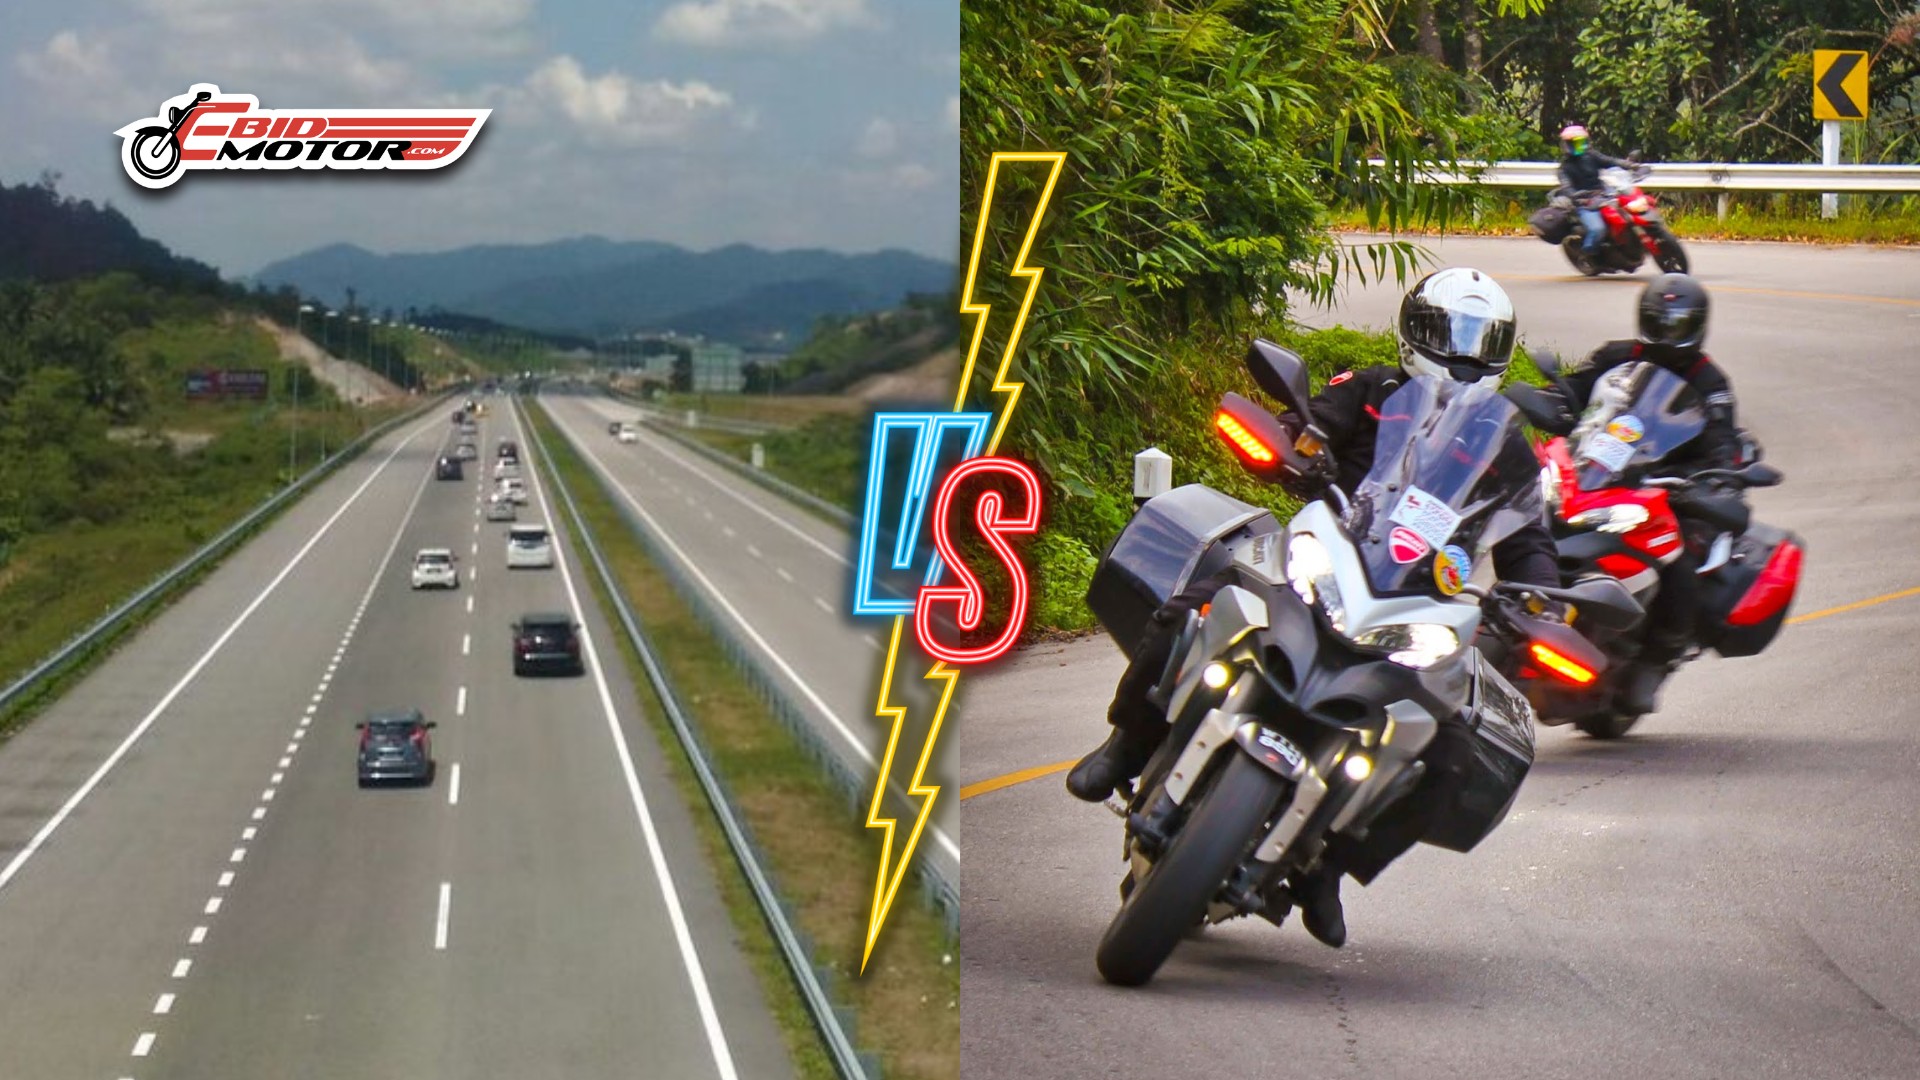 Ride @ Drive Paling Best Ikut Highway Atau Jalan Dalam?